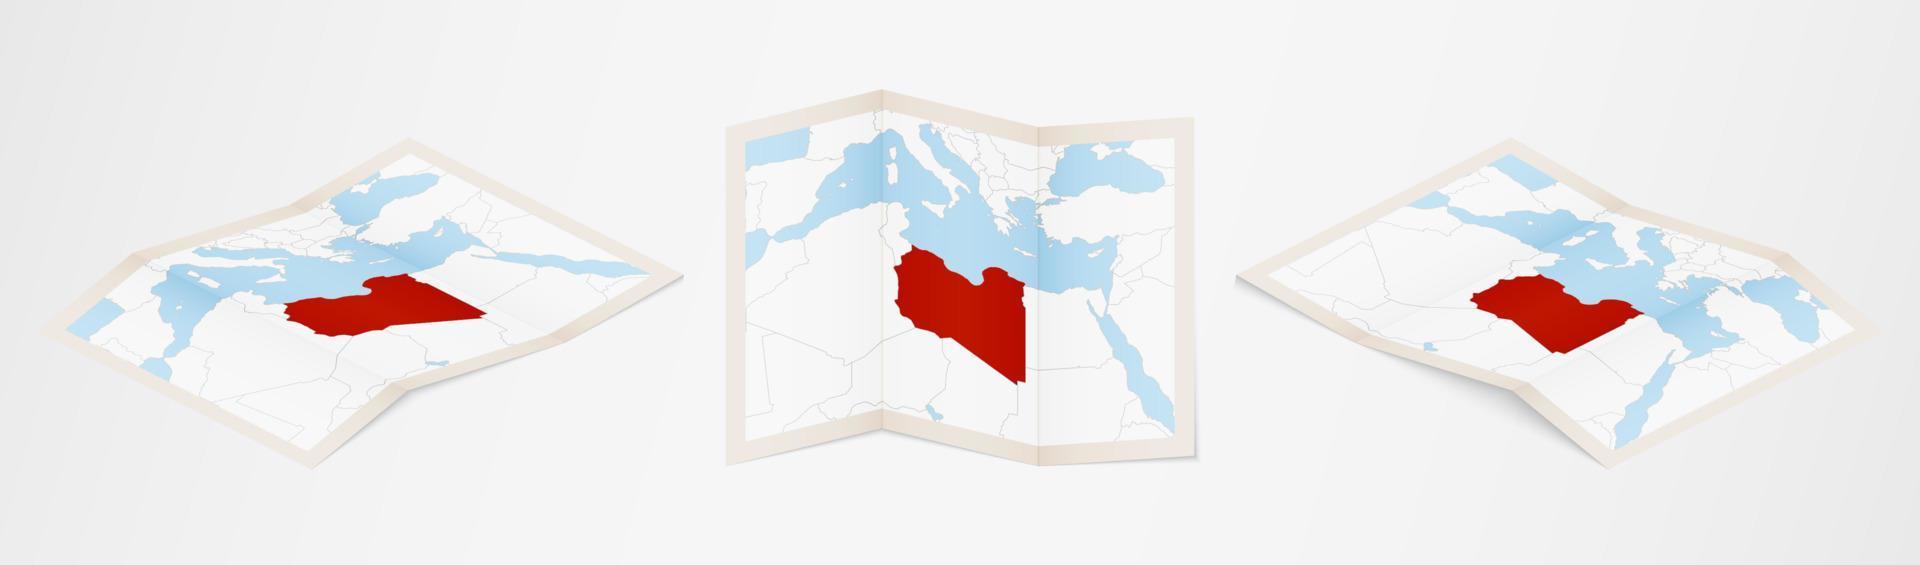 gevouwen kaart van Libië in drie verschillend versies. vector